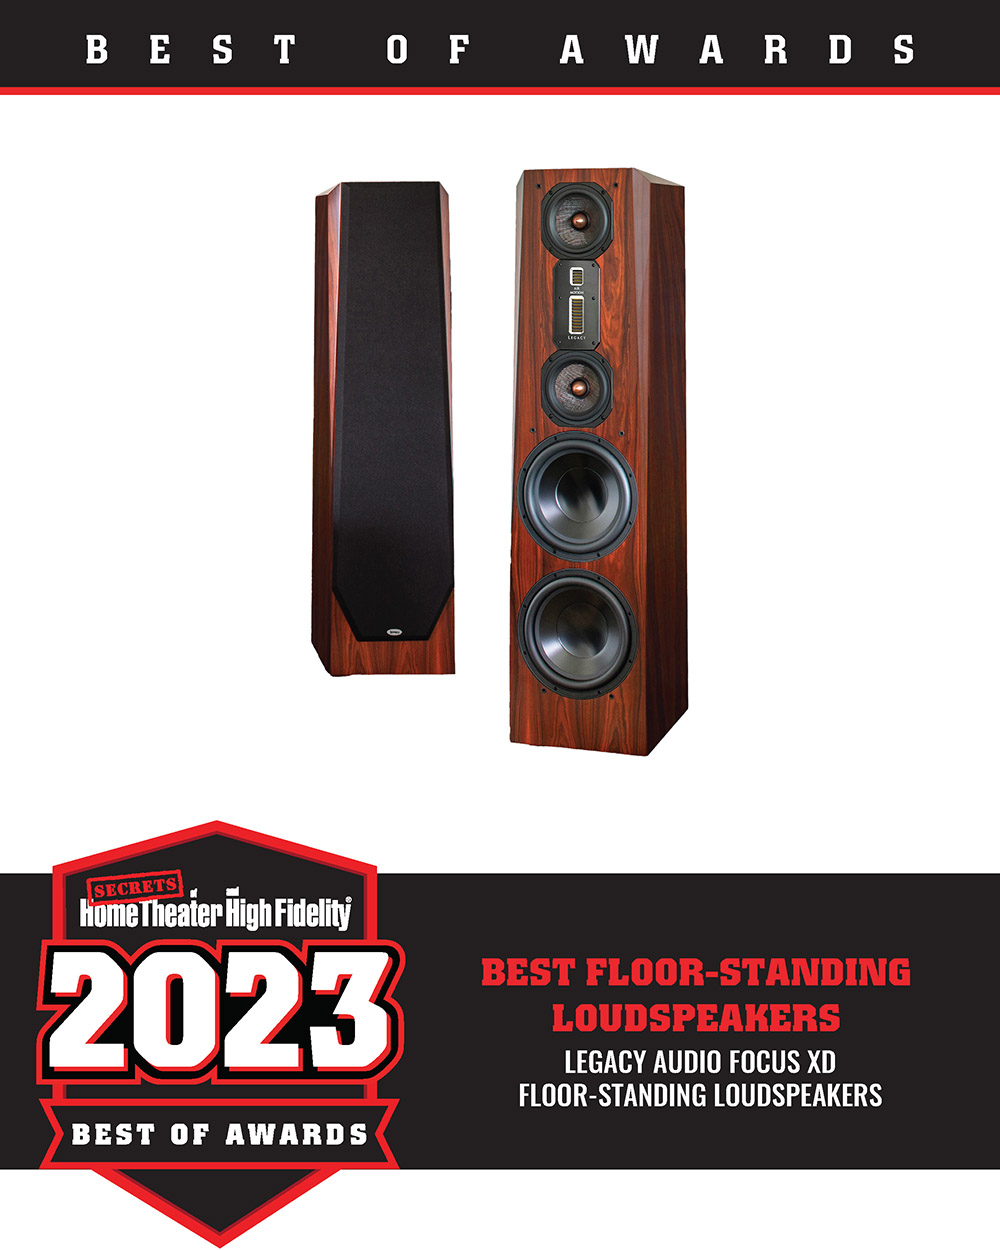 Legacy Audio Focus XD Floor-Standing Loudspeakers